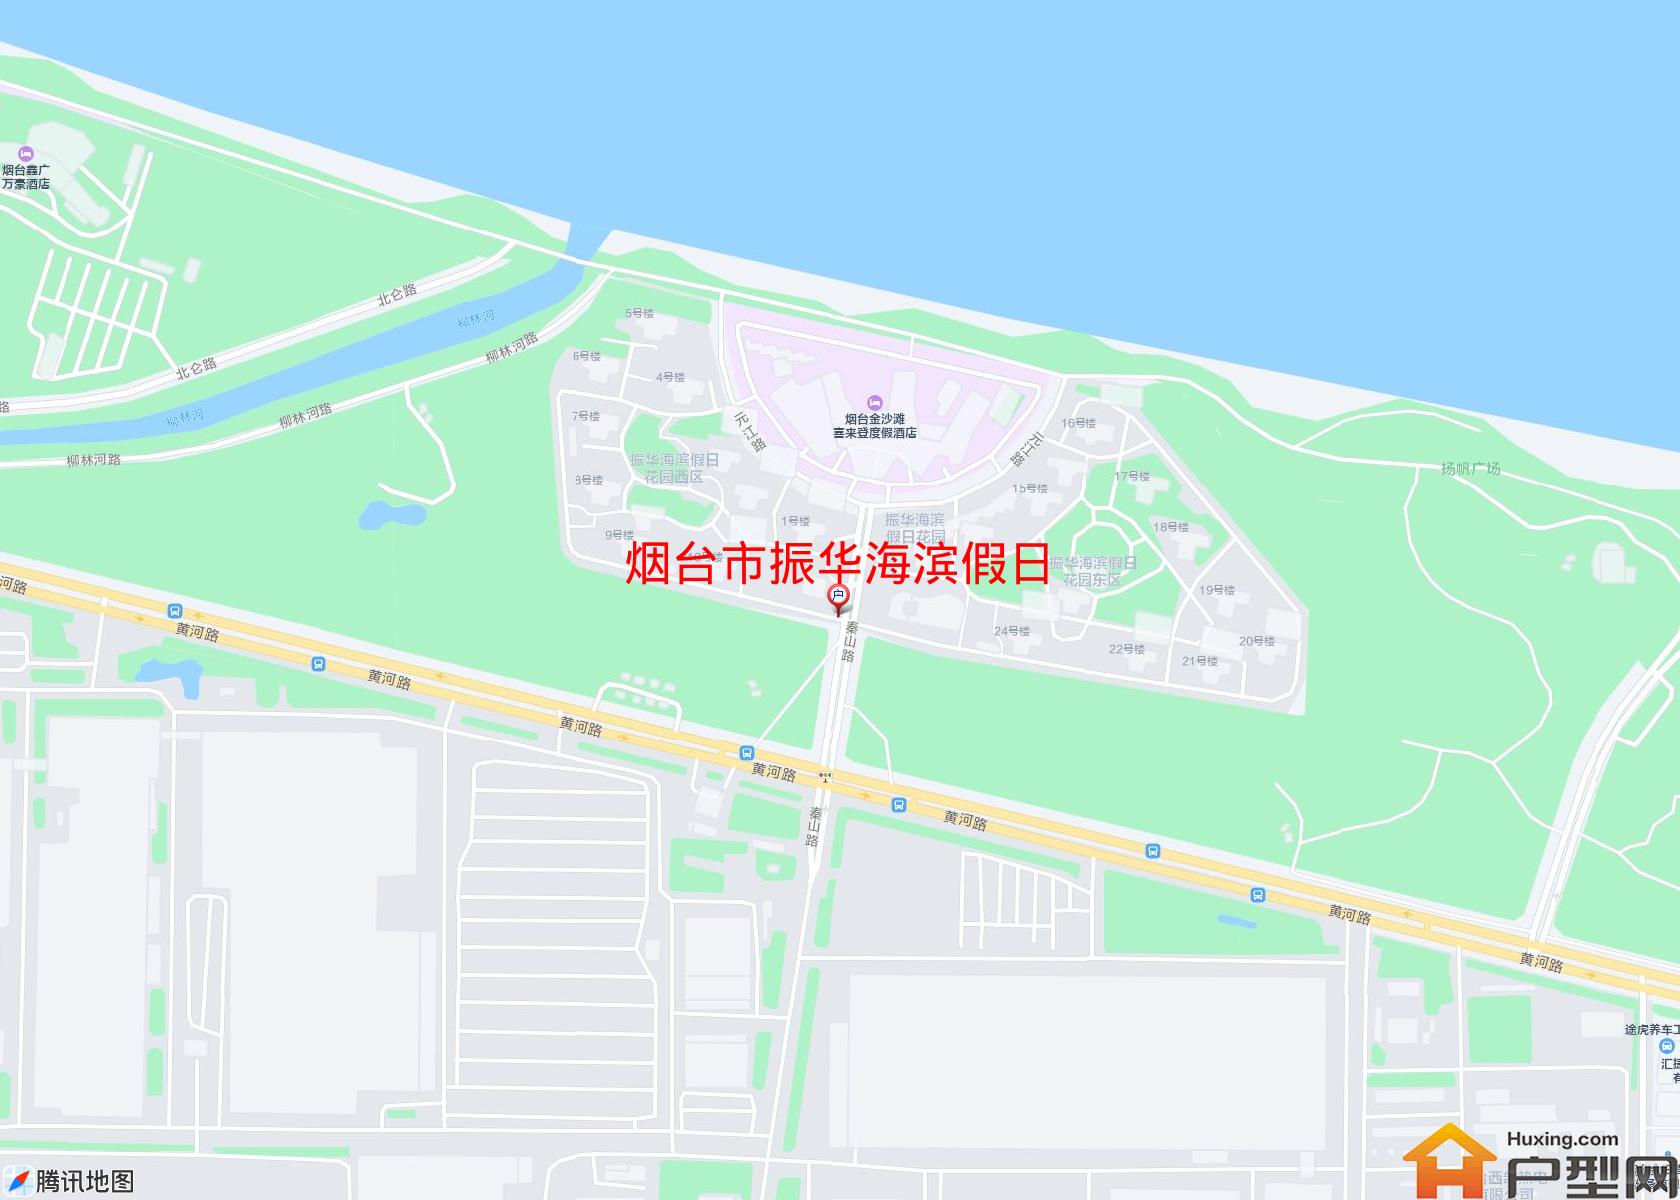 振华海滨假日小区 - 户型网